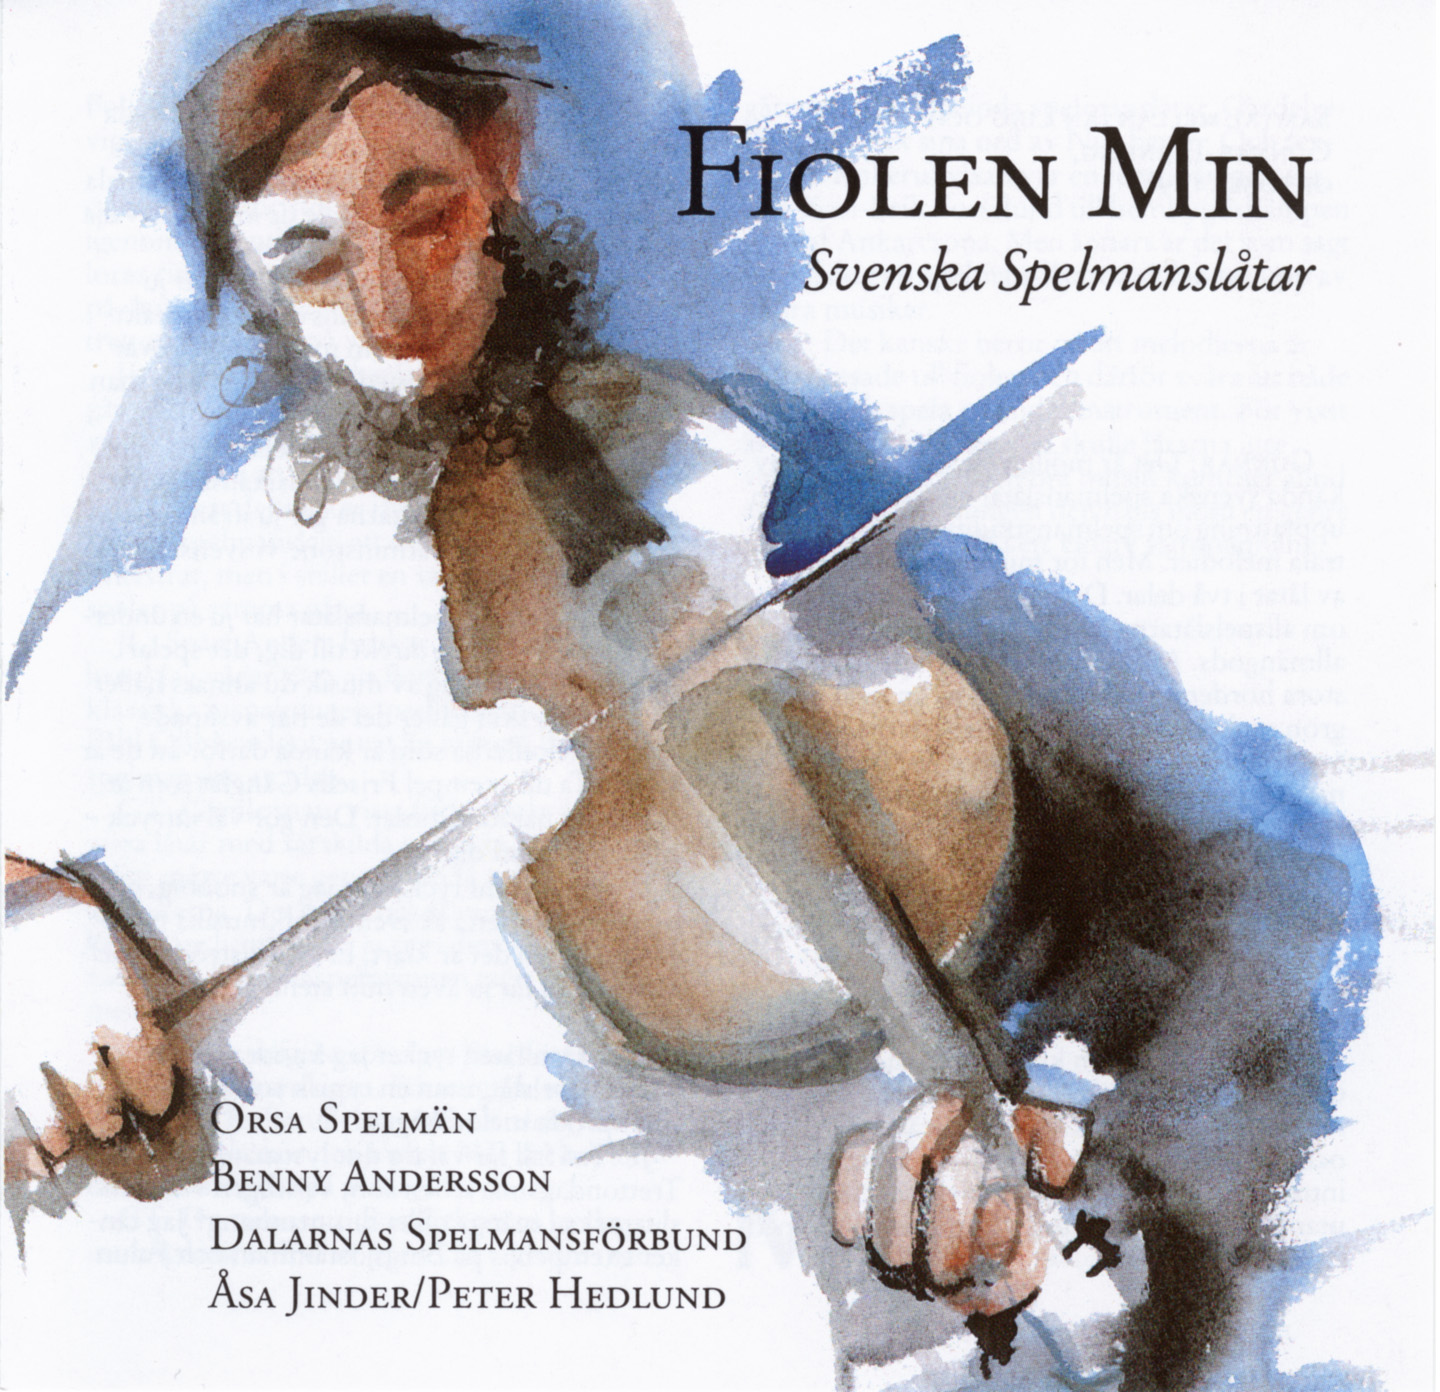 Orsa Spelm n med Benny Andersson - Fiolen min - Svenska spelmansl tar - CD